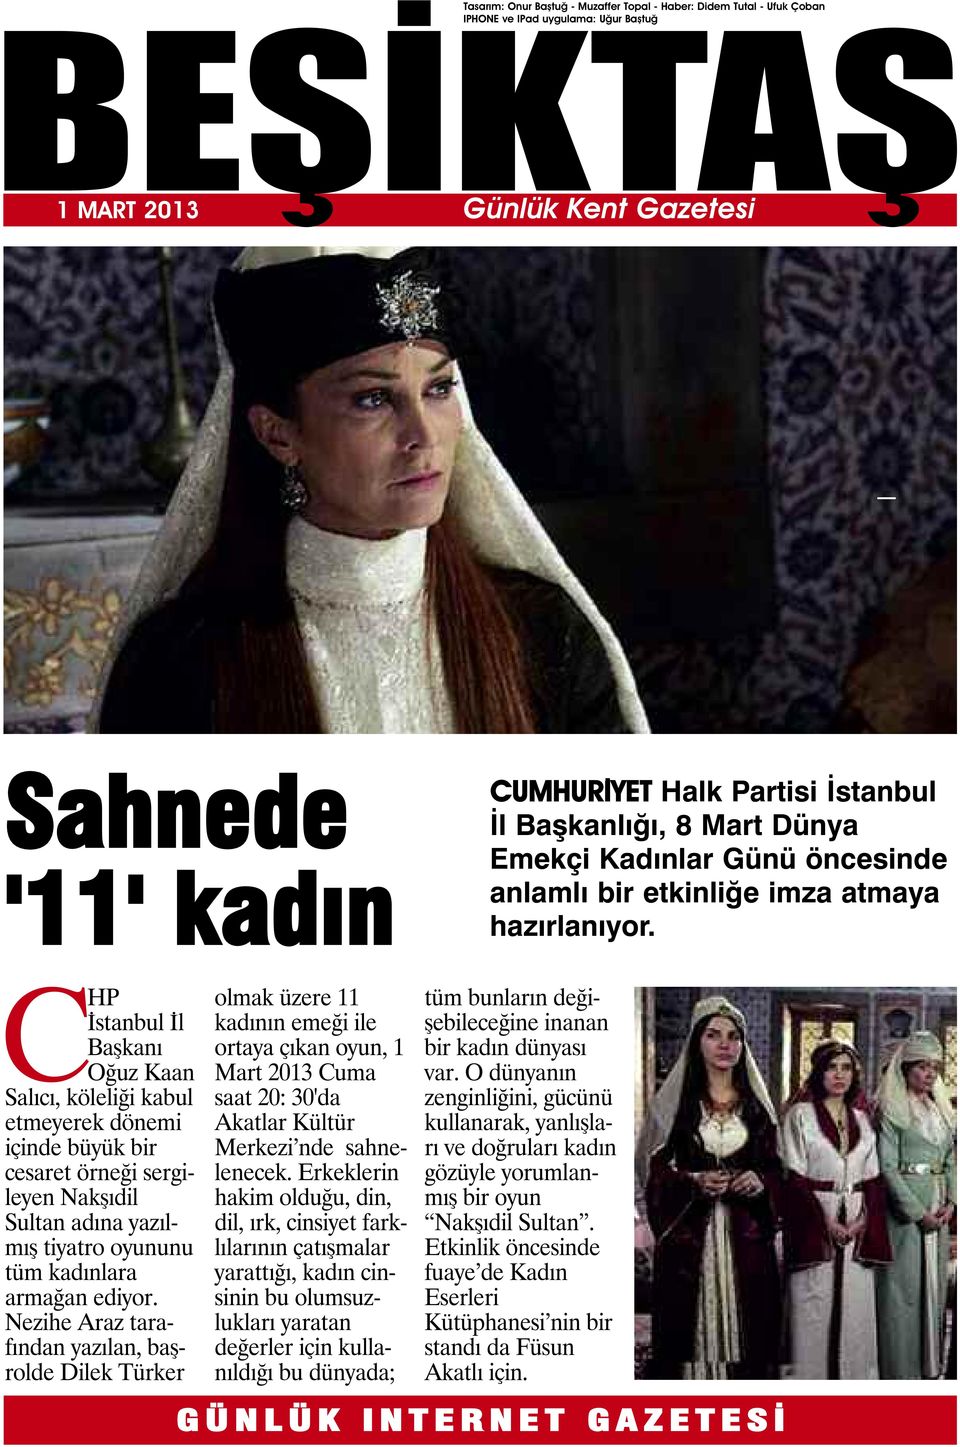 CHP İstanbul İl Başkanı Oğuz Kaan Salıcı, köleliği kabul etmeyerek dönemi içinde büyük bir cesaret örneği sergileyen Nakşıdil Sultan adına yazılmış tiyatro oyununu tüm kadınlara armağan ediyor.